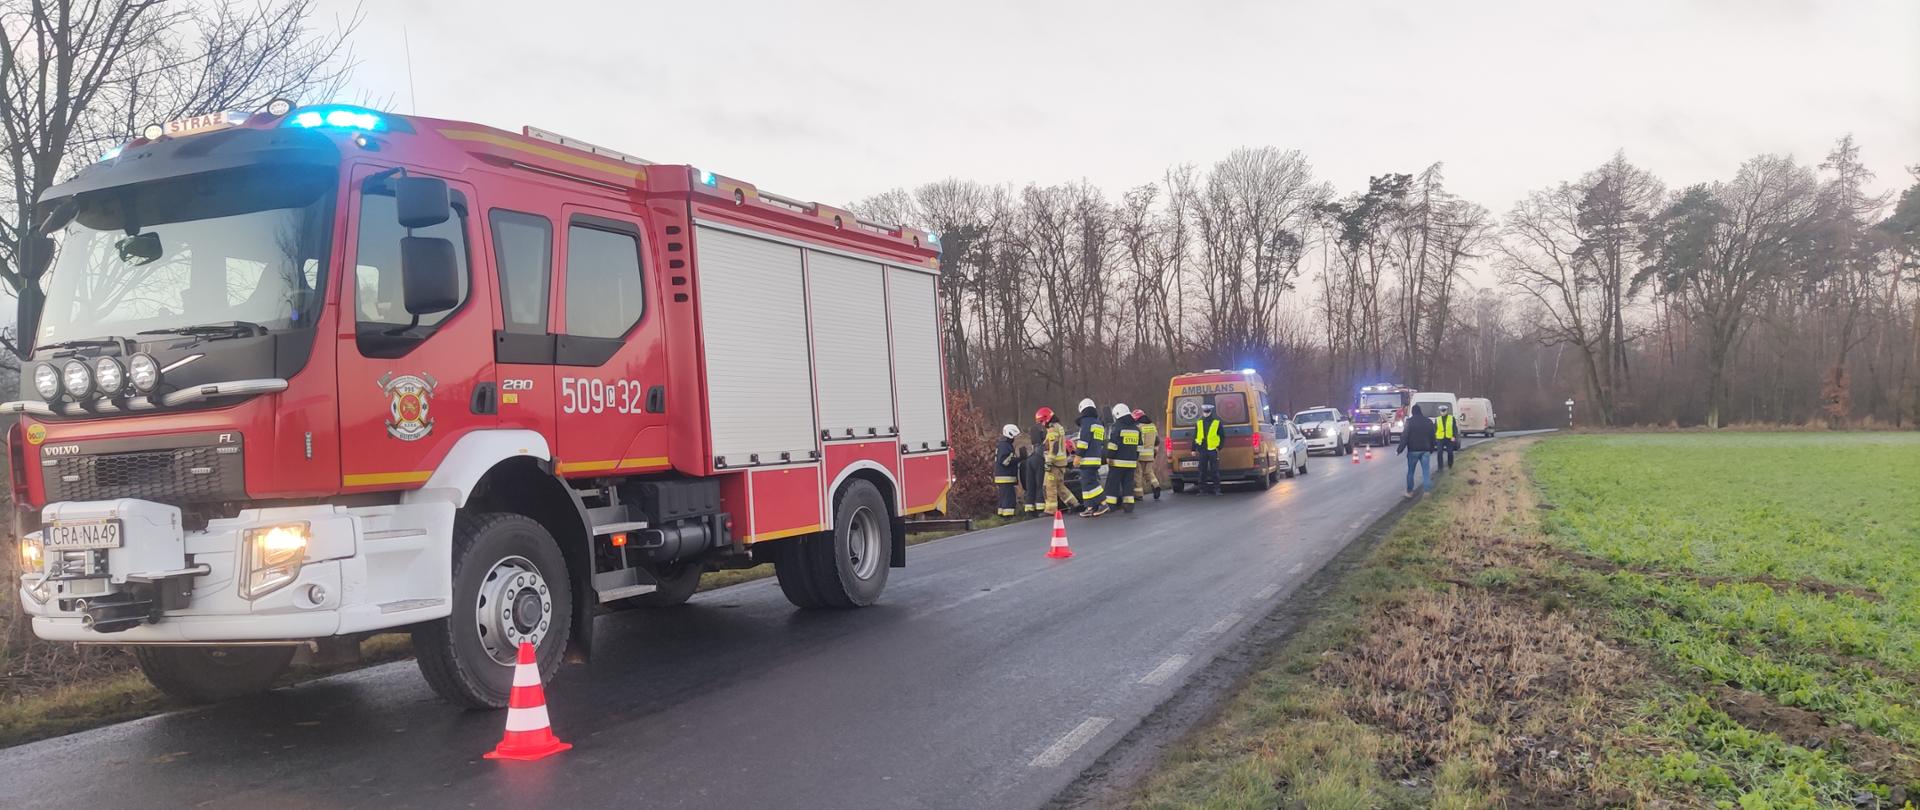 Zdjęcie przedstawia drogę o nawierzchni asfaltowej oraz służby ratownicze podczas kolizji w Żakowicach. Na pierwszym planie wóz strażacki koloru czerwonego, na drugim planie karetka pogotowia, policja i inne pojazdy, strażacy i policjanci podczas czynności służbowych.